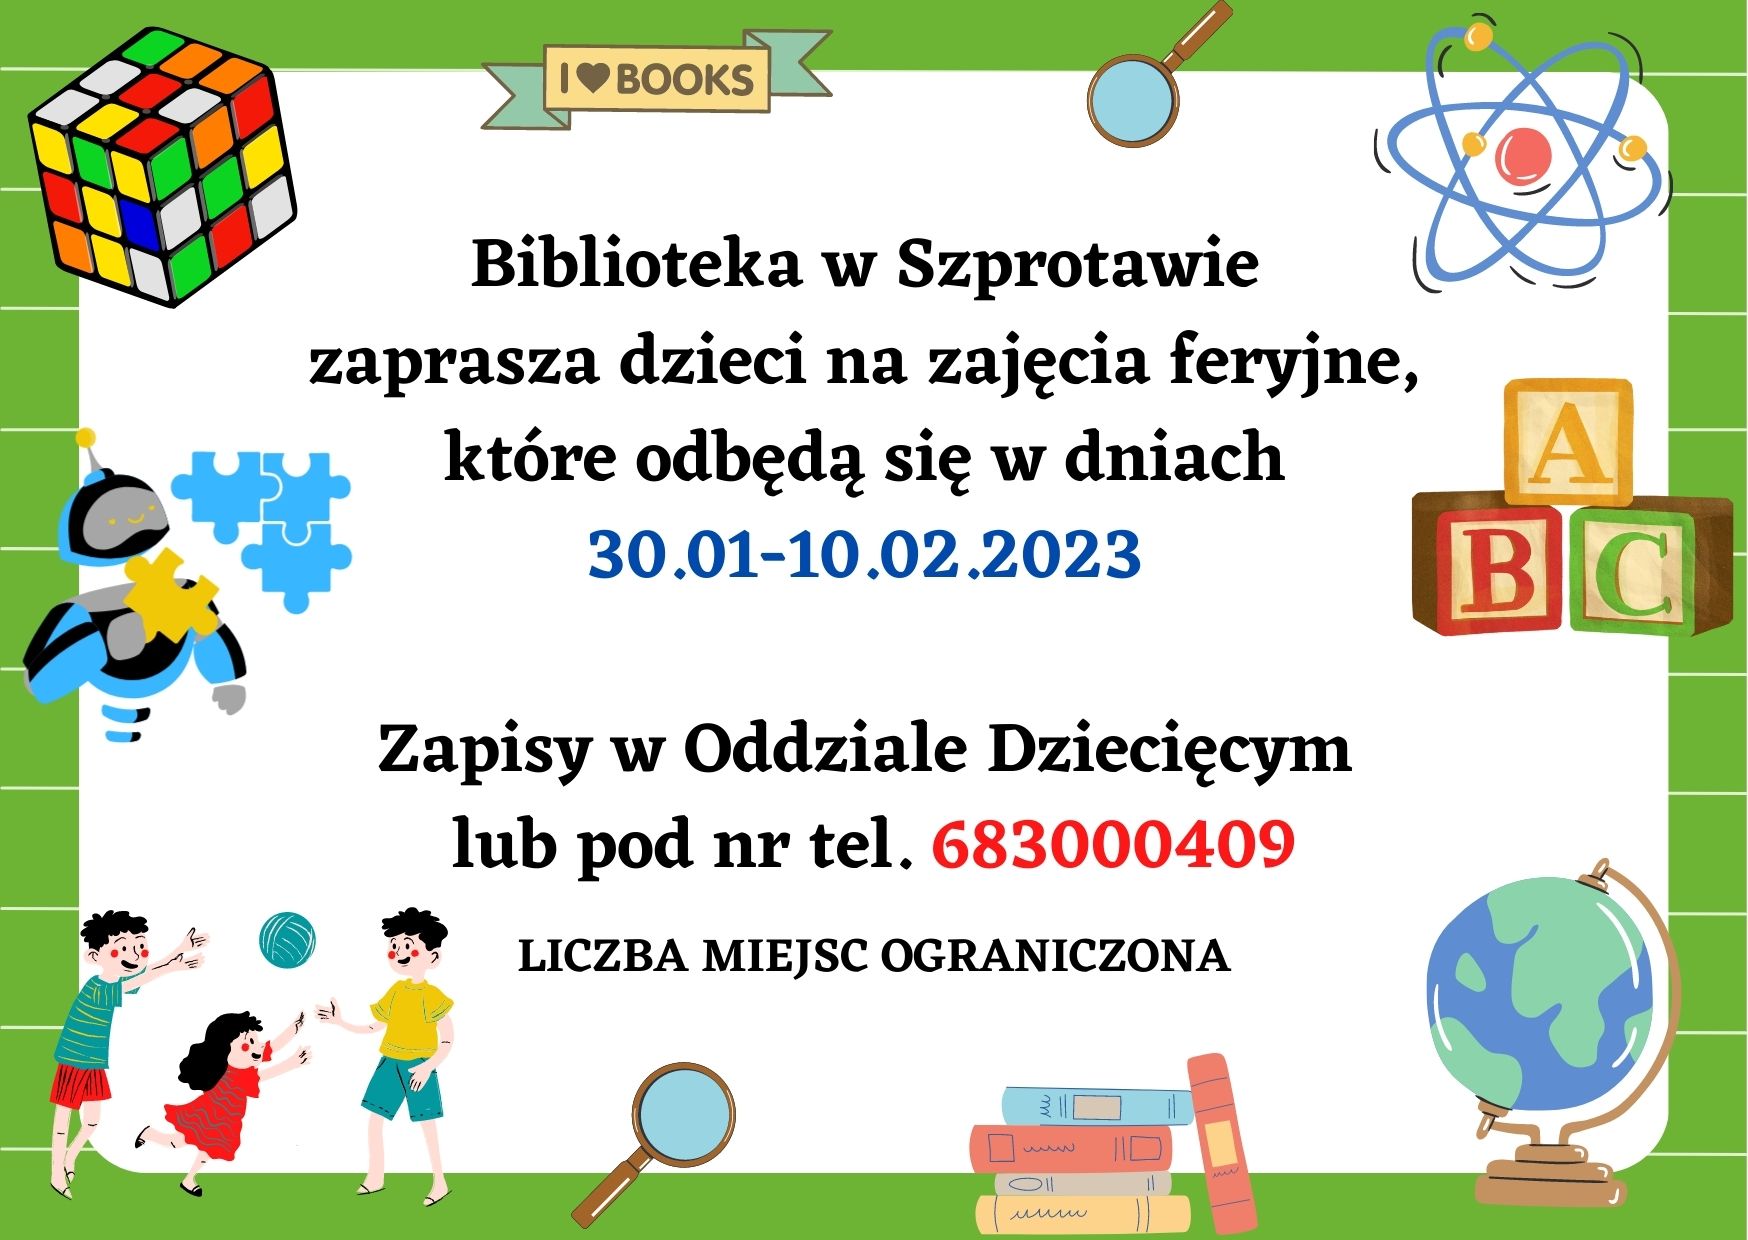 Biblioteka w Szprotawie  zaprasza dzieci na zajęcia feryjne,  które odbędą się w dniach  30.01-10.02.2023   Zapisy w Oddziale Dziecięcym  lub pod nr tel. 683000409  LICZBA MIEJSC OGRANICZONA